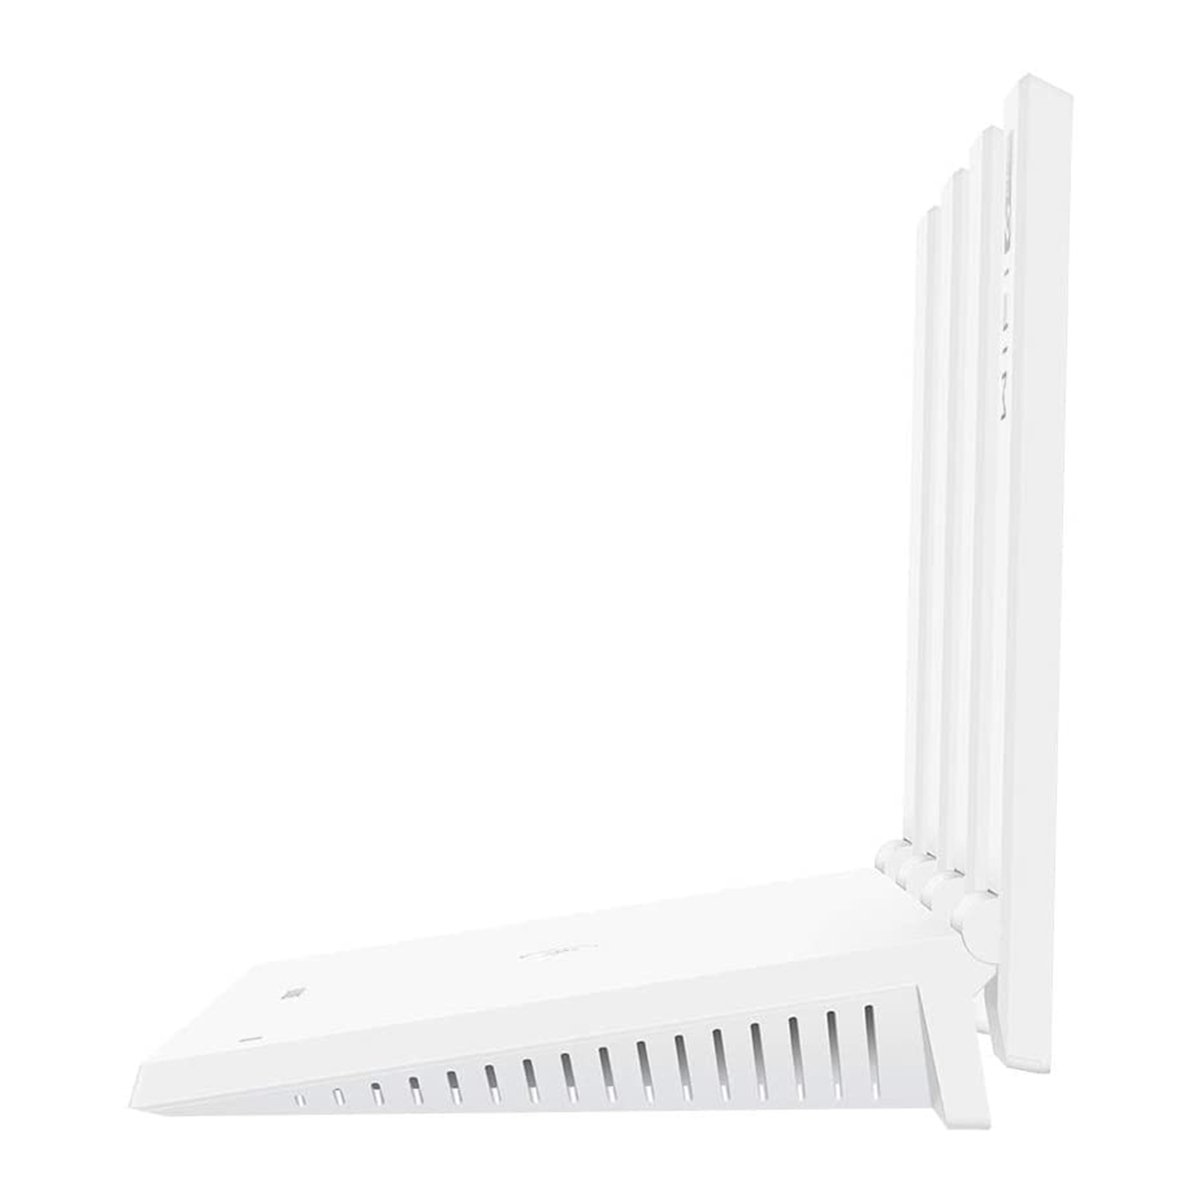 Huawei WireLess Router WS7200-20 White